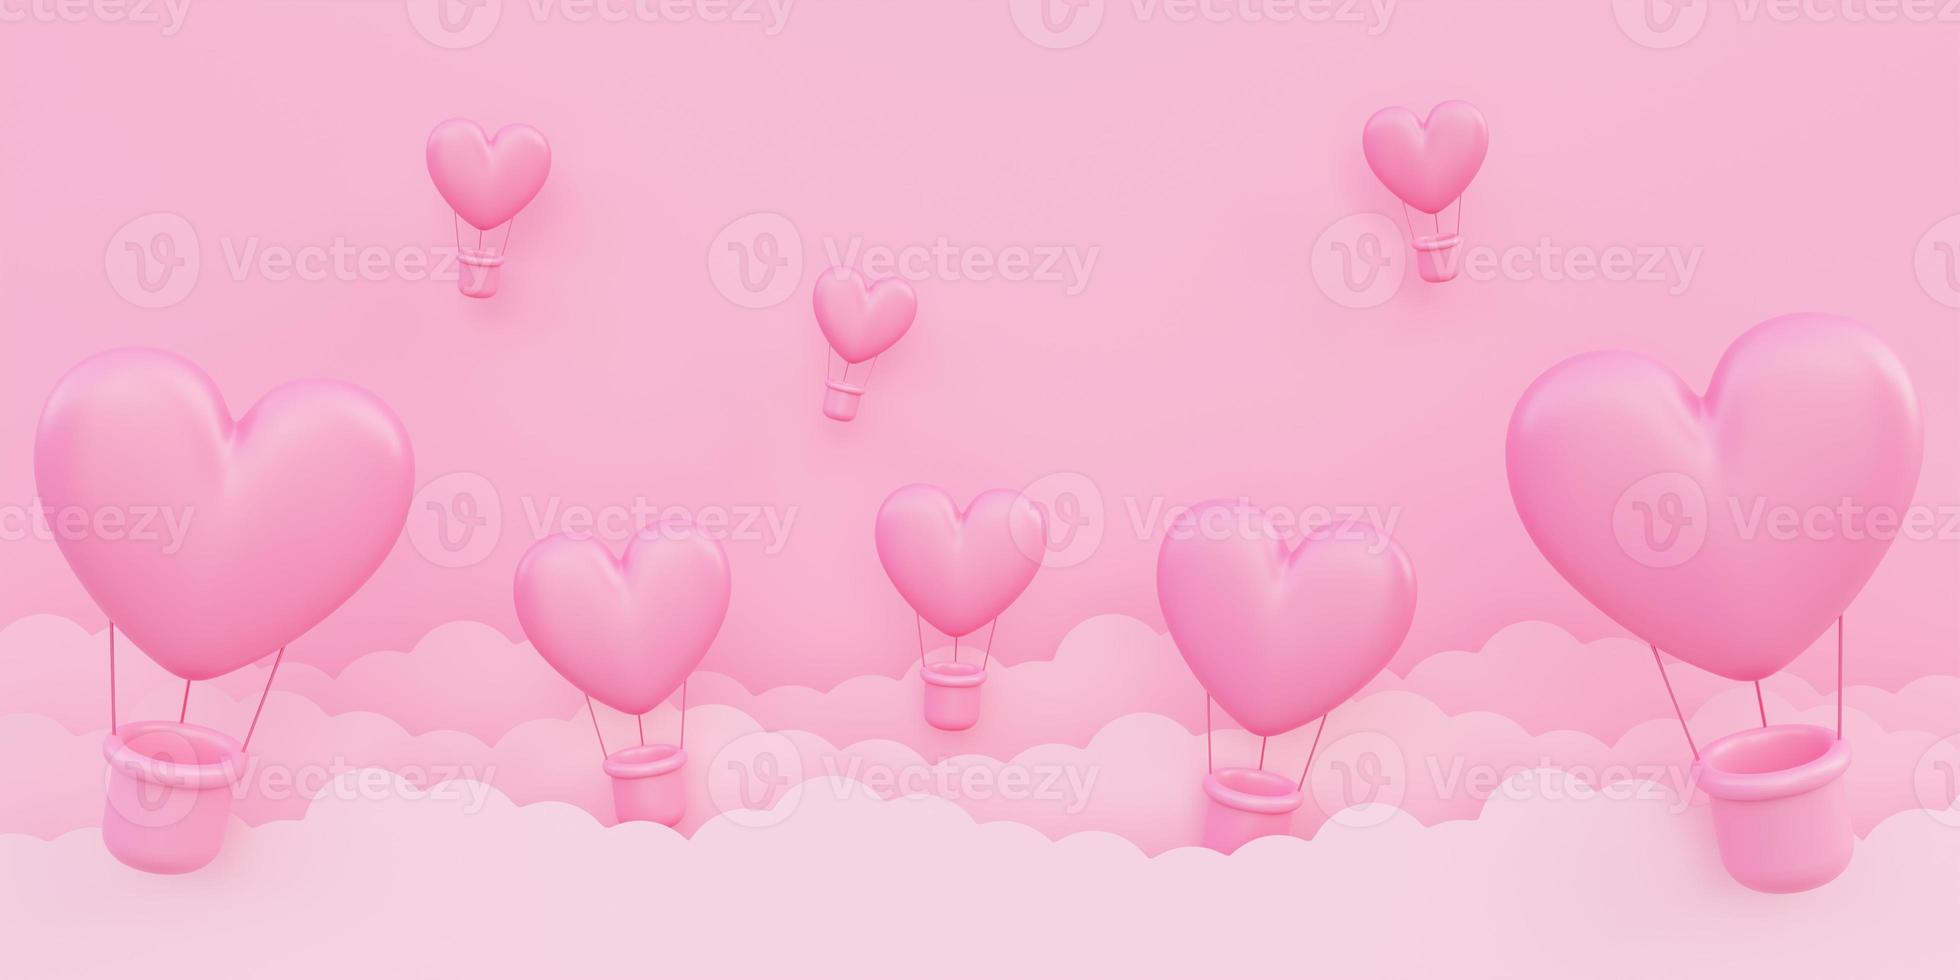 San Valentino, sfondo del concetto di amore, mongolfiere rosa a forma di cuore 3d che volano nel cielo con nuvole di carta foto